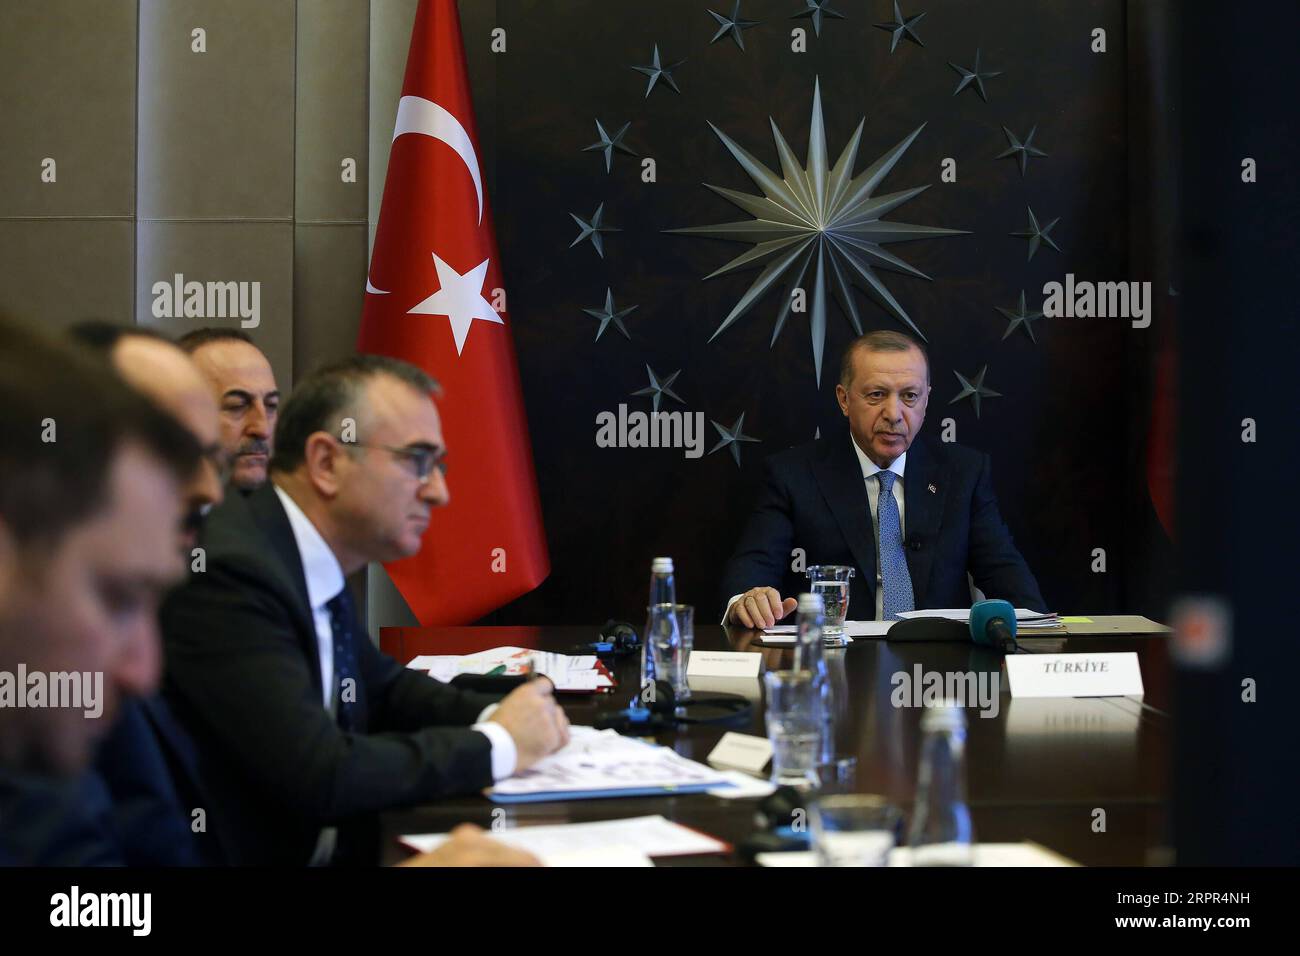 200326 -- ISTANBUL, 26. März 2020 Xinhua -- der türkische Präsident Recep Tayyip Erdogan R nimmt am 26. März 2020 am außerordentlichen G20-Gipfel der virtuellen Staats- und Regierungschefs über Video-Link in Istanbul, Türkei, Teil. Der türkische Präsident Recep Tayyip Erdogan forderte die Länder der Welt am Donnerstag nachdrücklich auf, unverzüglich gemeinsame Anstrengungen zur Bekämpfung des Ausbruchs von COVID-19 zu Unternehmen, berichteten lokale Medien. Xinhua TURKEY-ISTANBUL-ERDOGAN-G20-COVID-19 PUBLICATIONxNOTxINxCHN Stockfoto